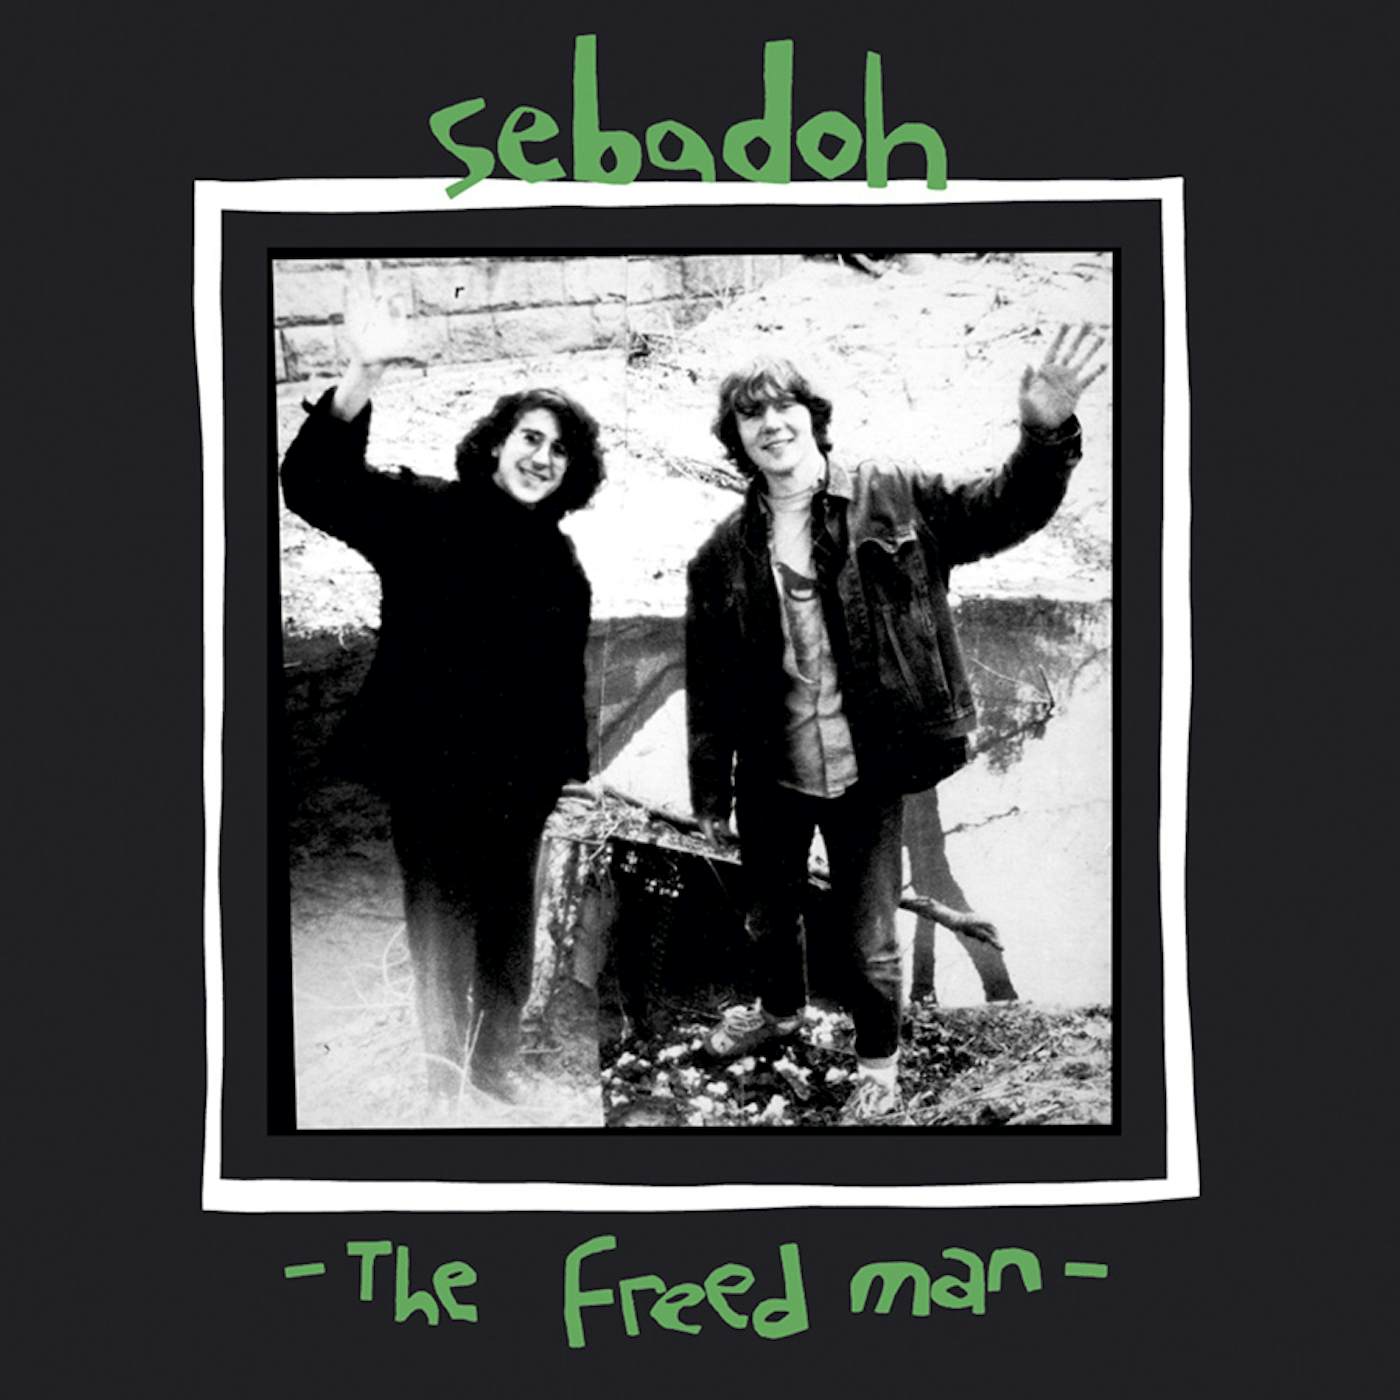 Sebadoh FREED MAN CD